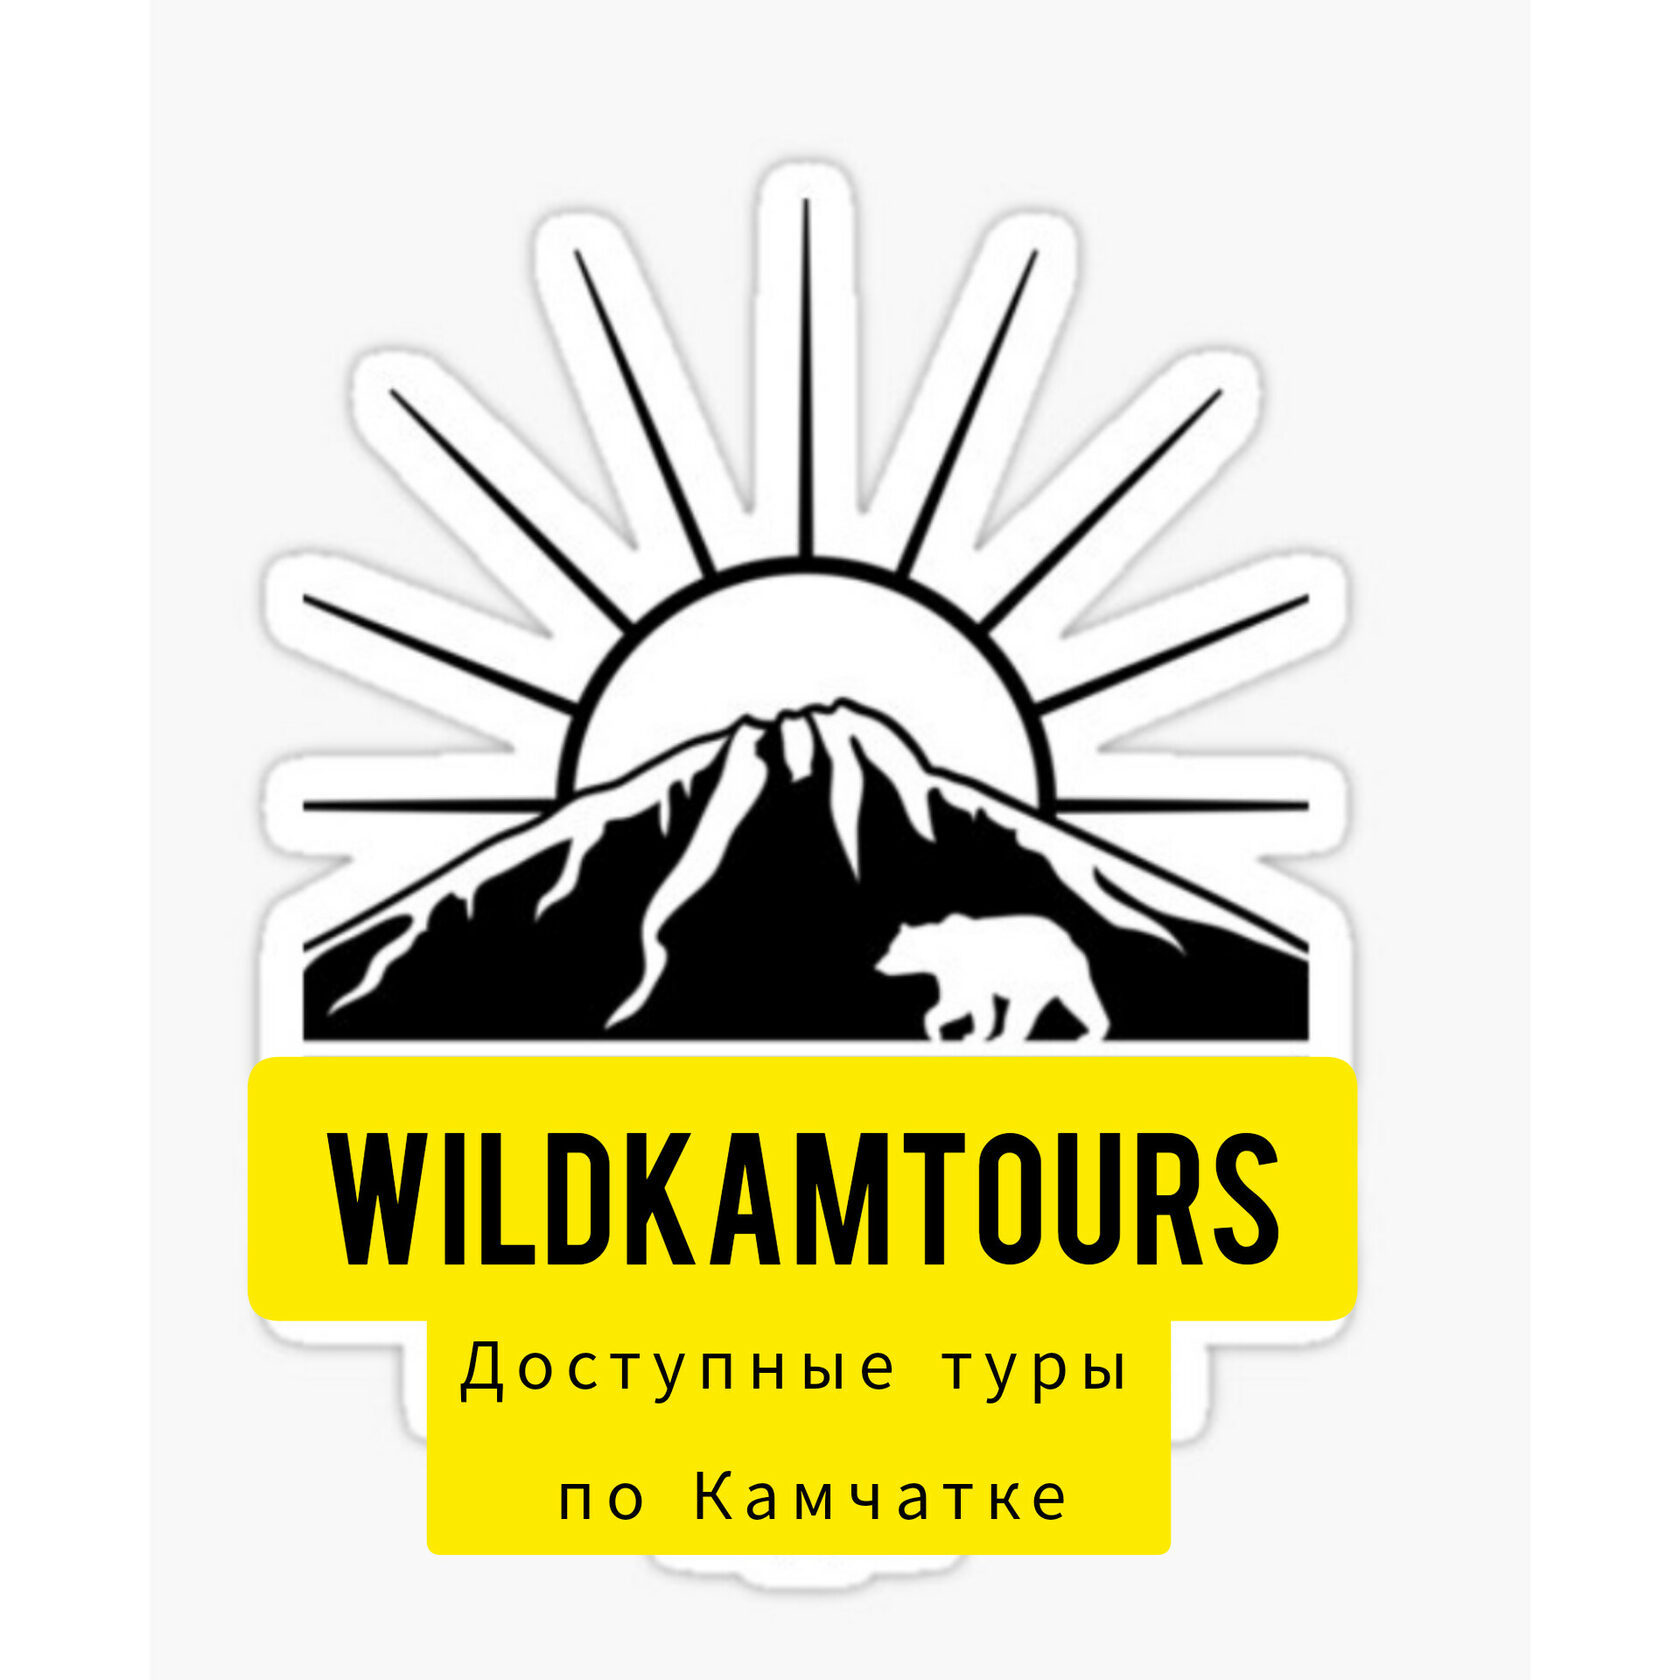 Wildkamtours